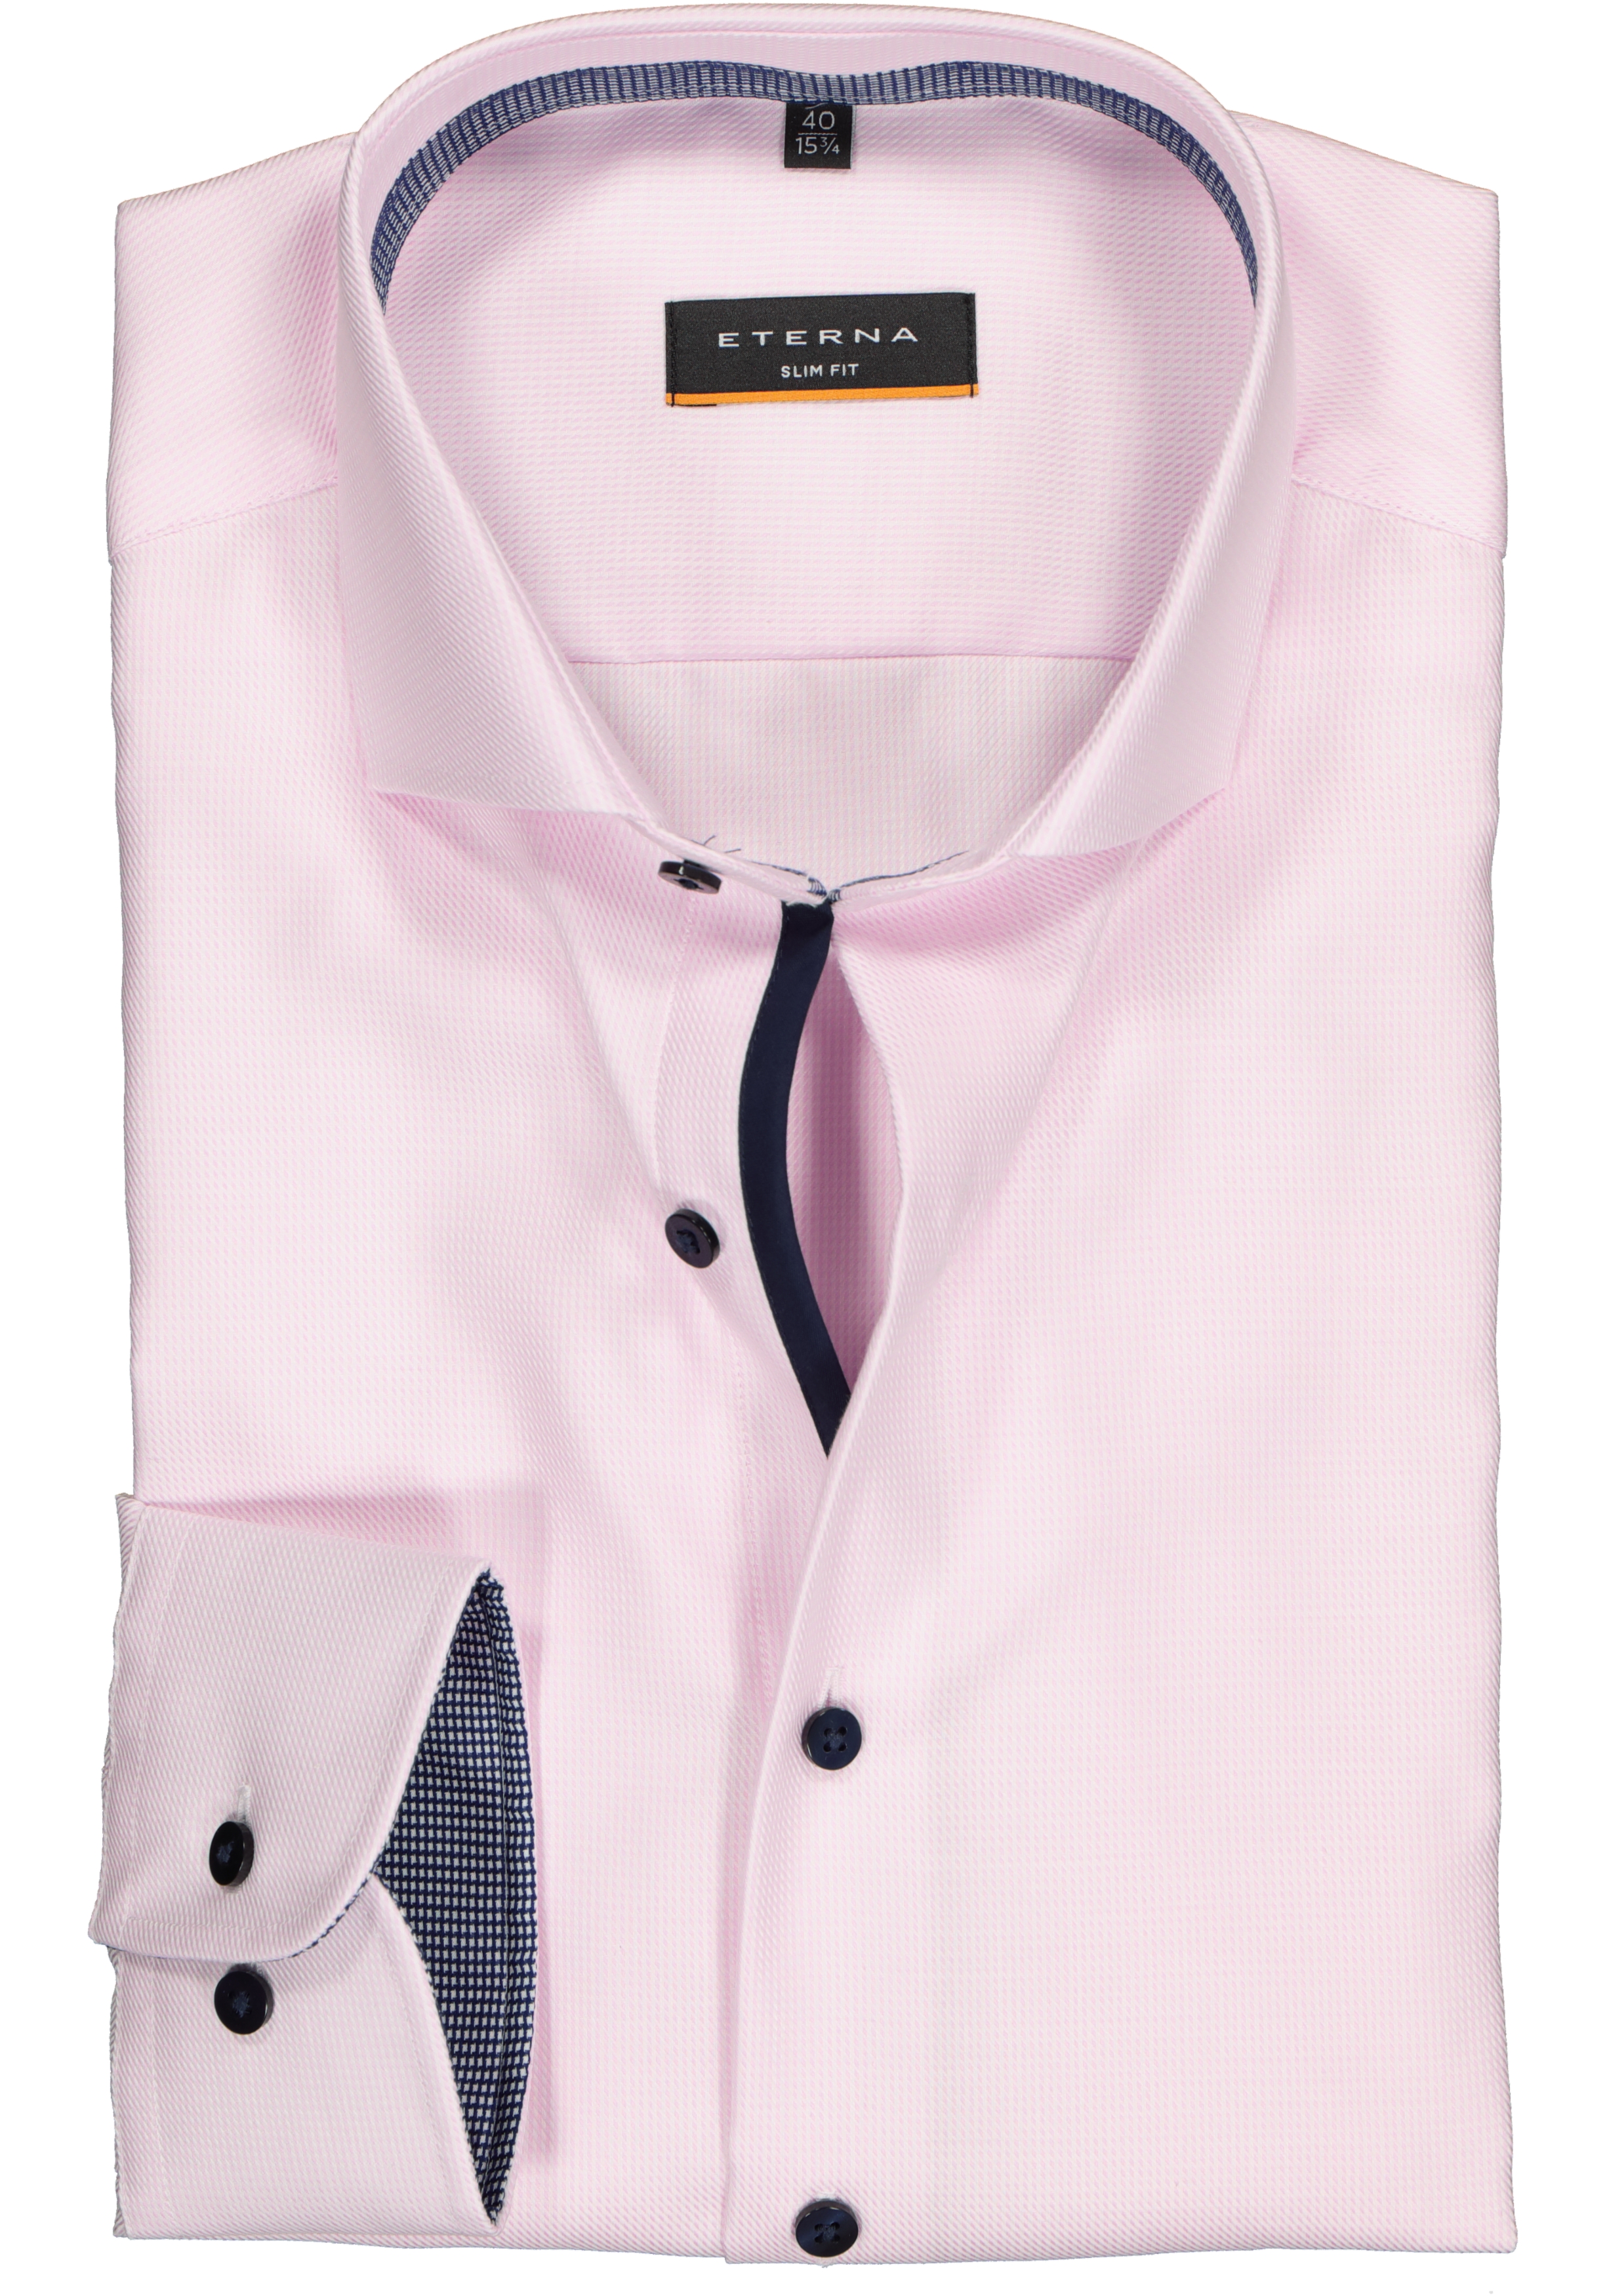 ETERNA slim fit overhemd, twill heren overhemd, roze met wit ( donkerblauw contrast)